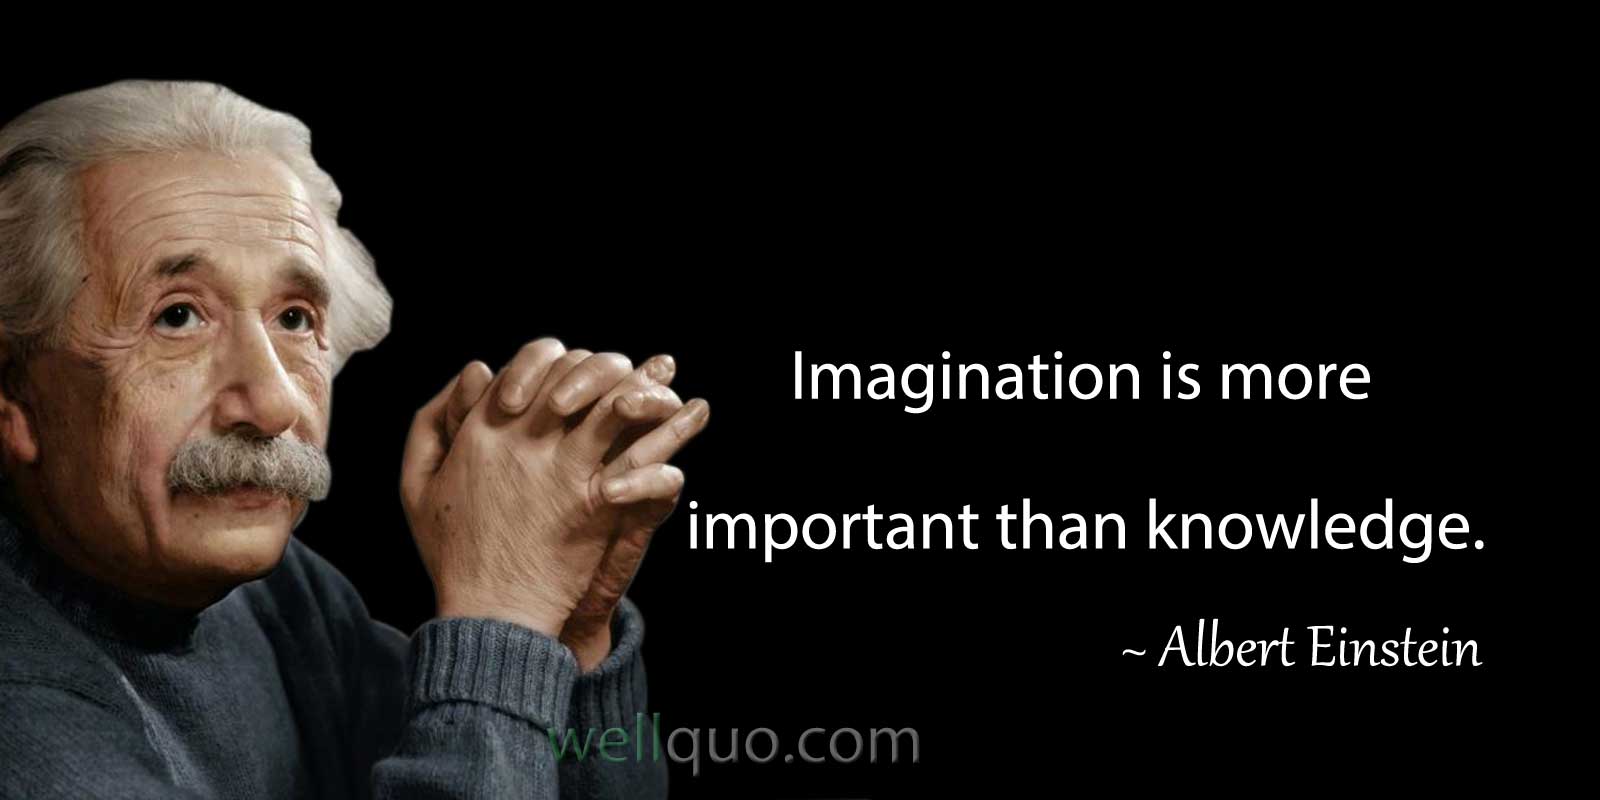 albert einstein quotes imagination is everything